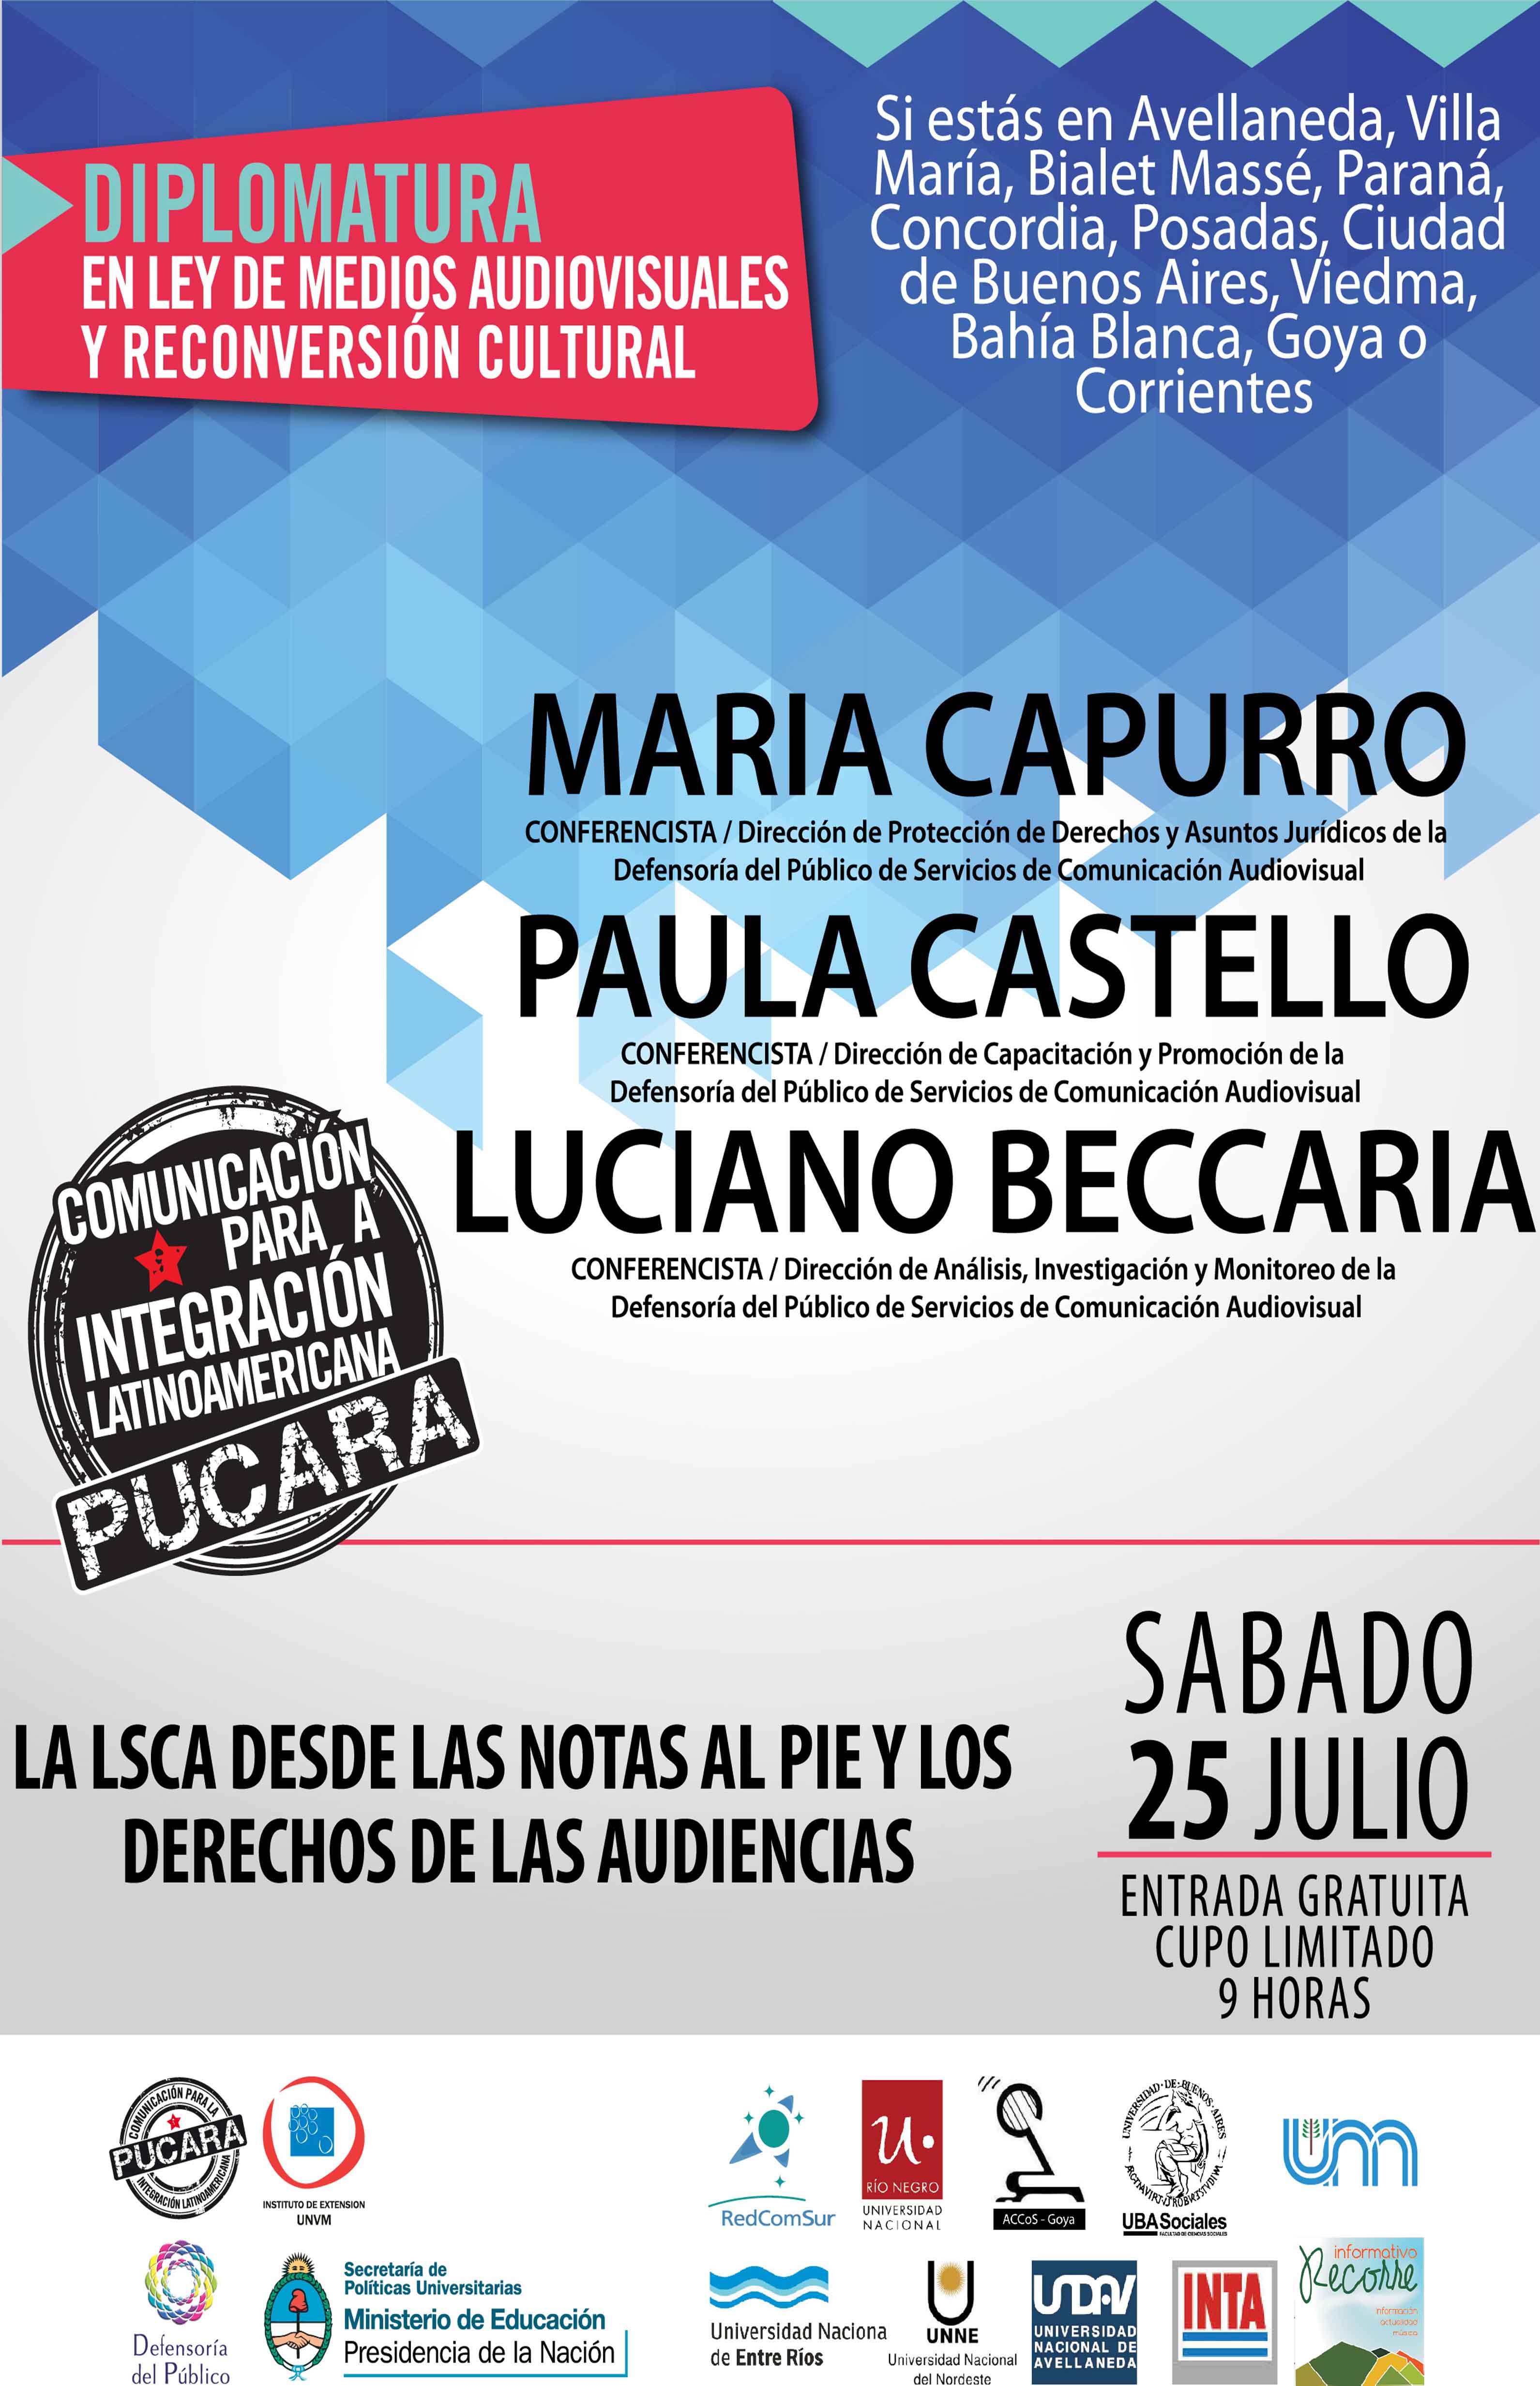 Conferencia a cargo de Maria Capurro, Paula Castello y Luciano Beccaría, Defensoría del Público